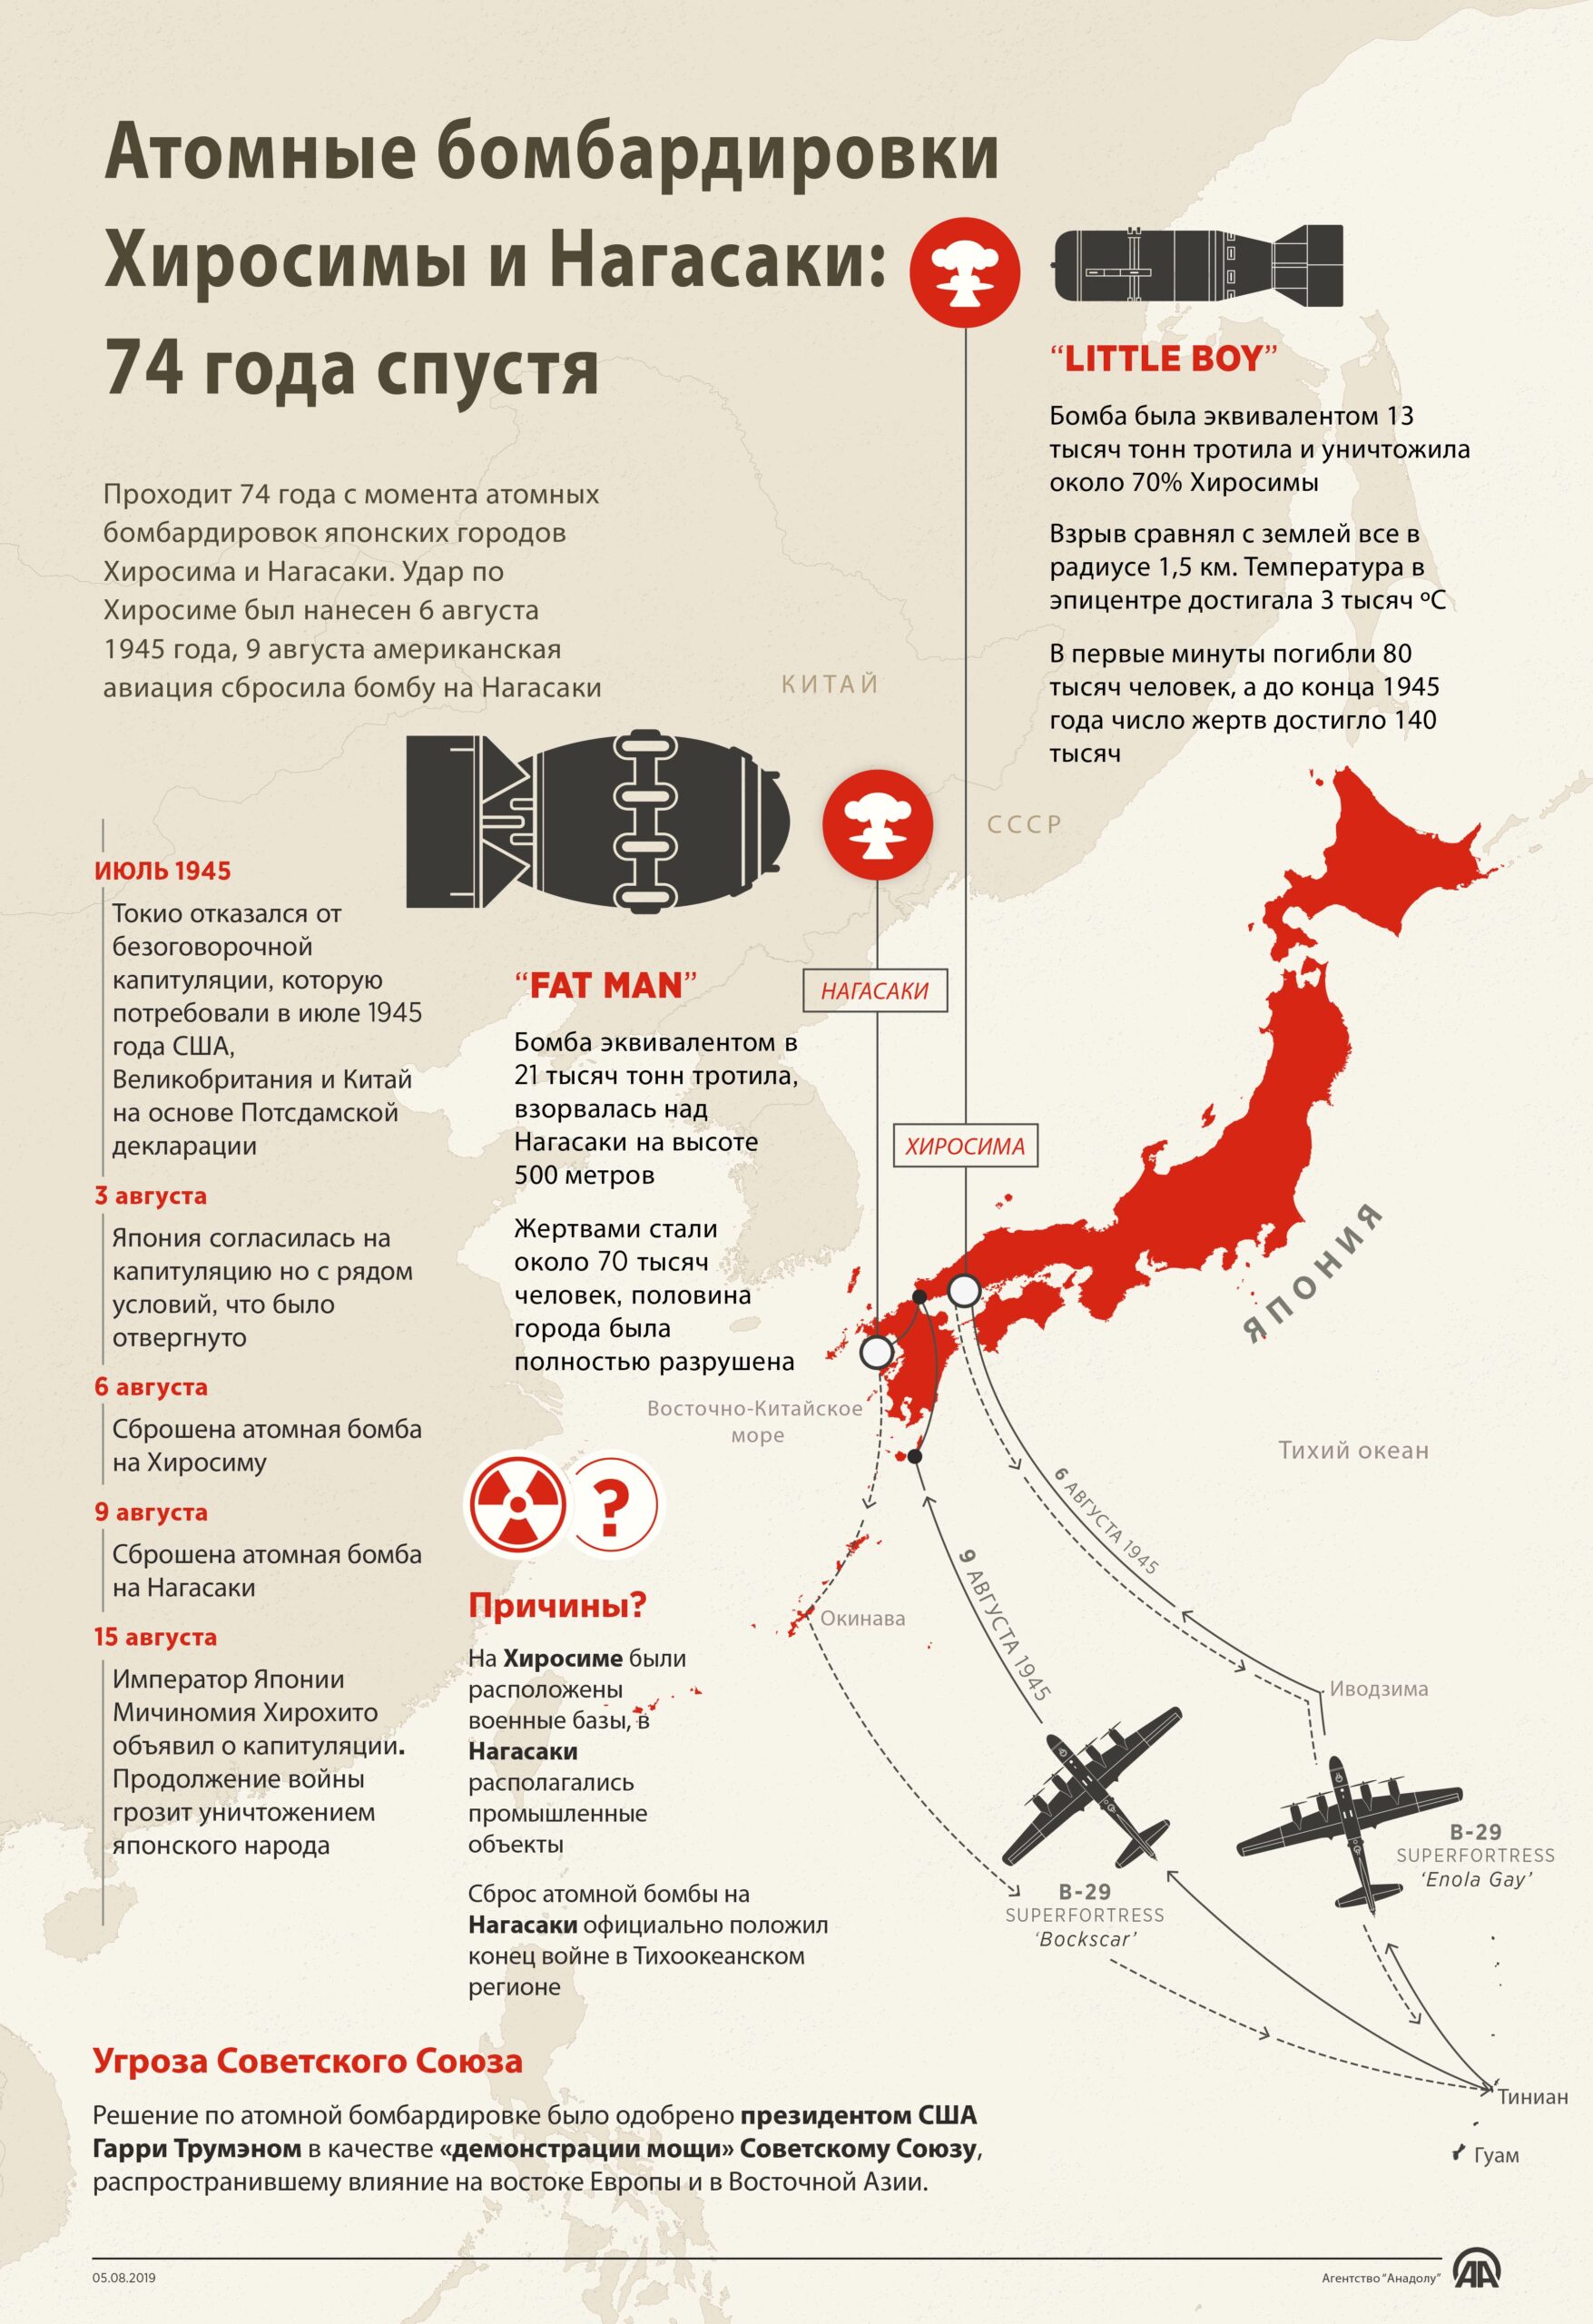 Атомные бомбардировки Хиросимы и Нагасаки: 74 года спустя